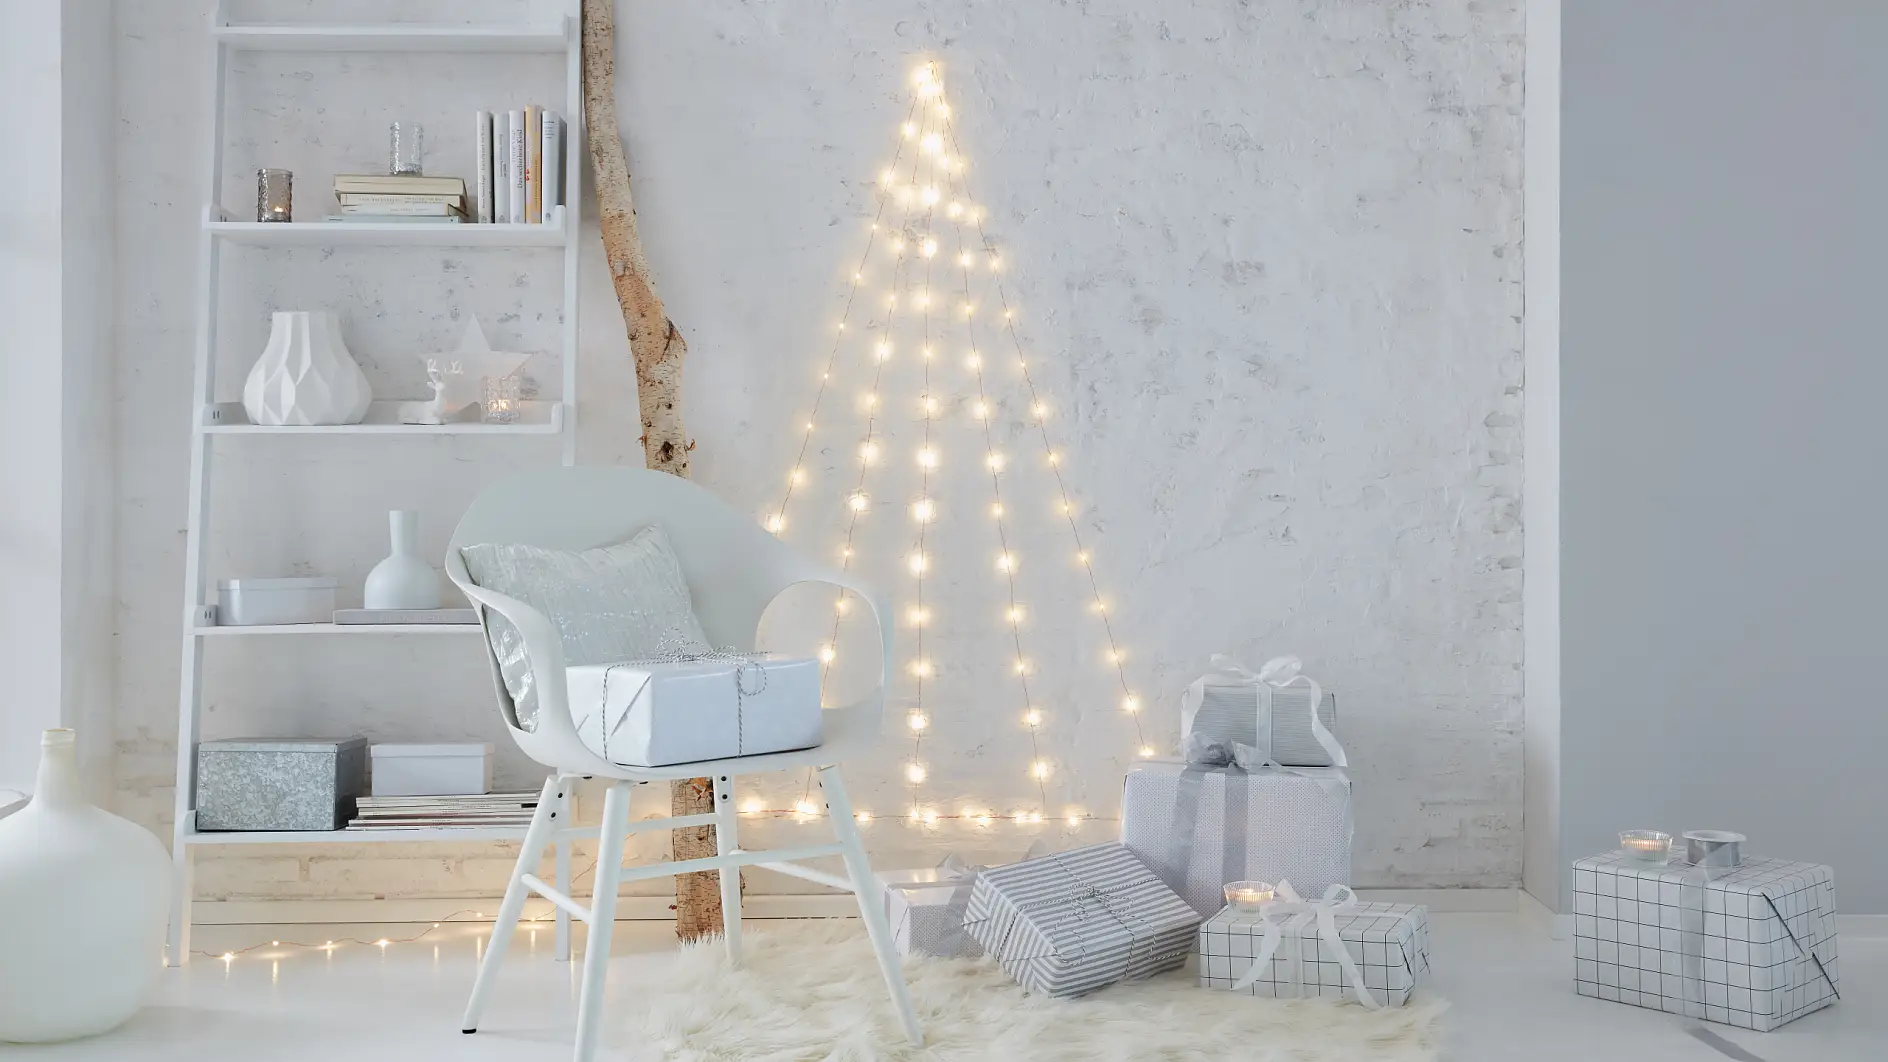 不需要用针，只需极低的维护费用： 不需要装饰的圣诞树。 制作带有LED仙女灯的圣诞树，用透明挂钩将灯挂到墙上去。